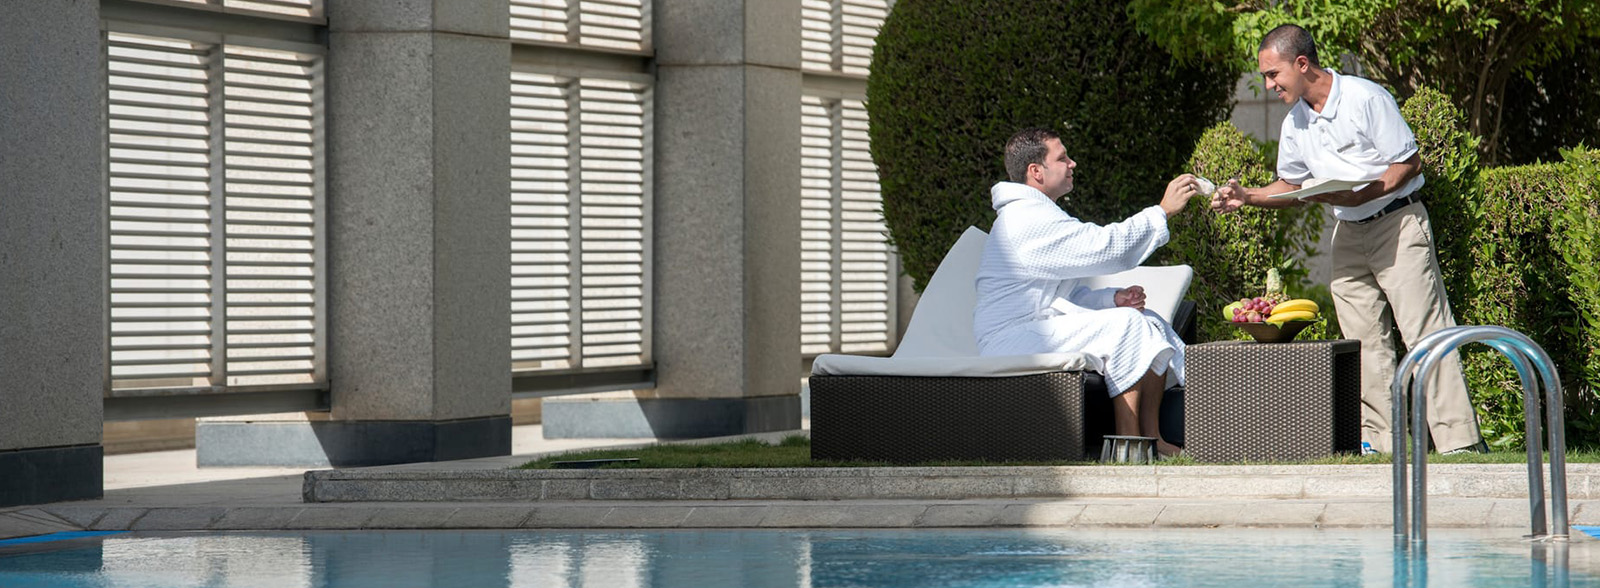 Four Seasons Hotel Riyadh – Pool with Service